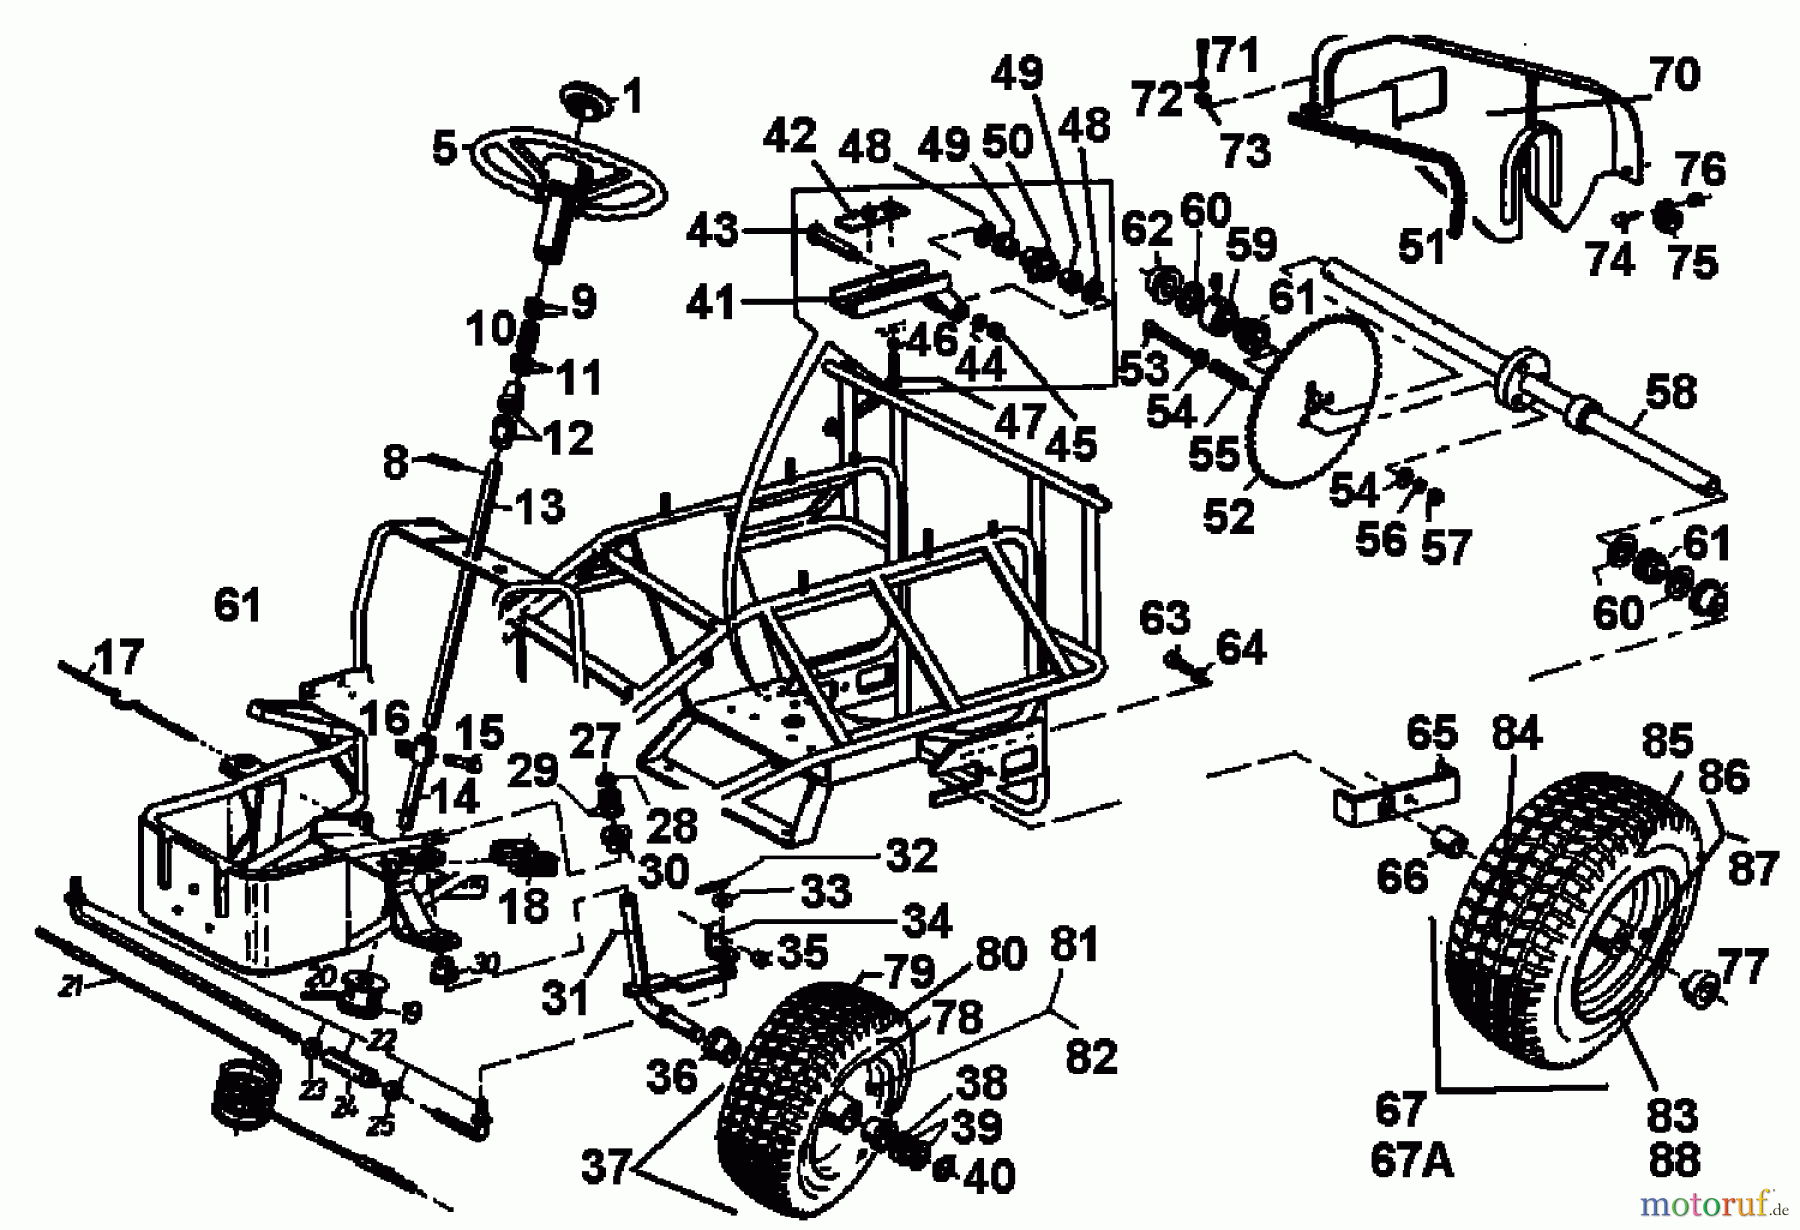  Gutbrod Lawn tractors Sprint 1000 E 02840.07  (1994) Rear axle, Steering, Wheels